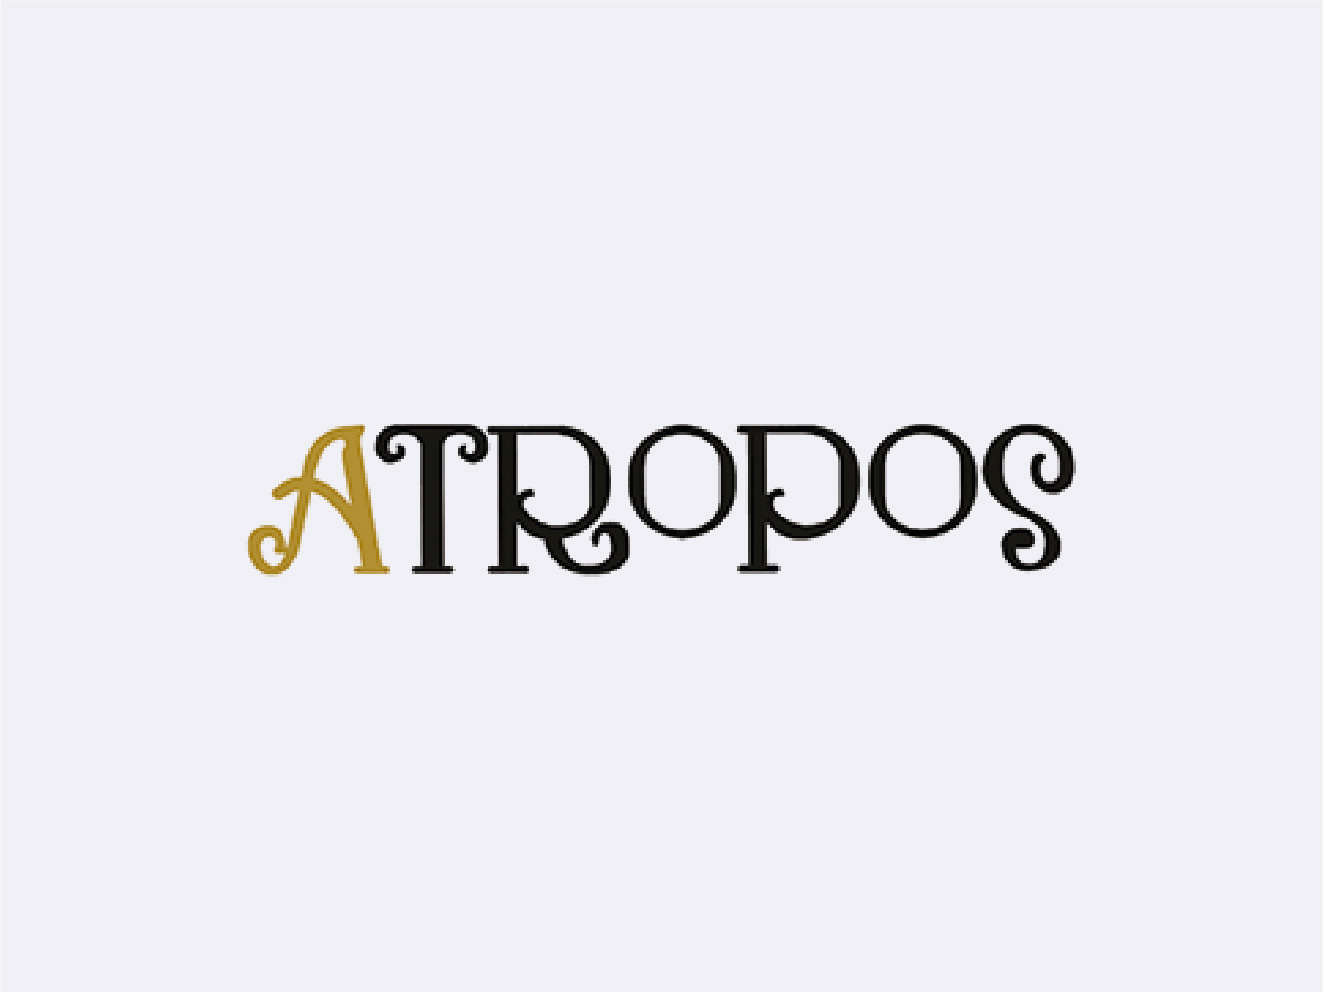 Uitvaartverzorging Atropos